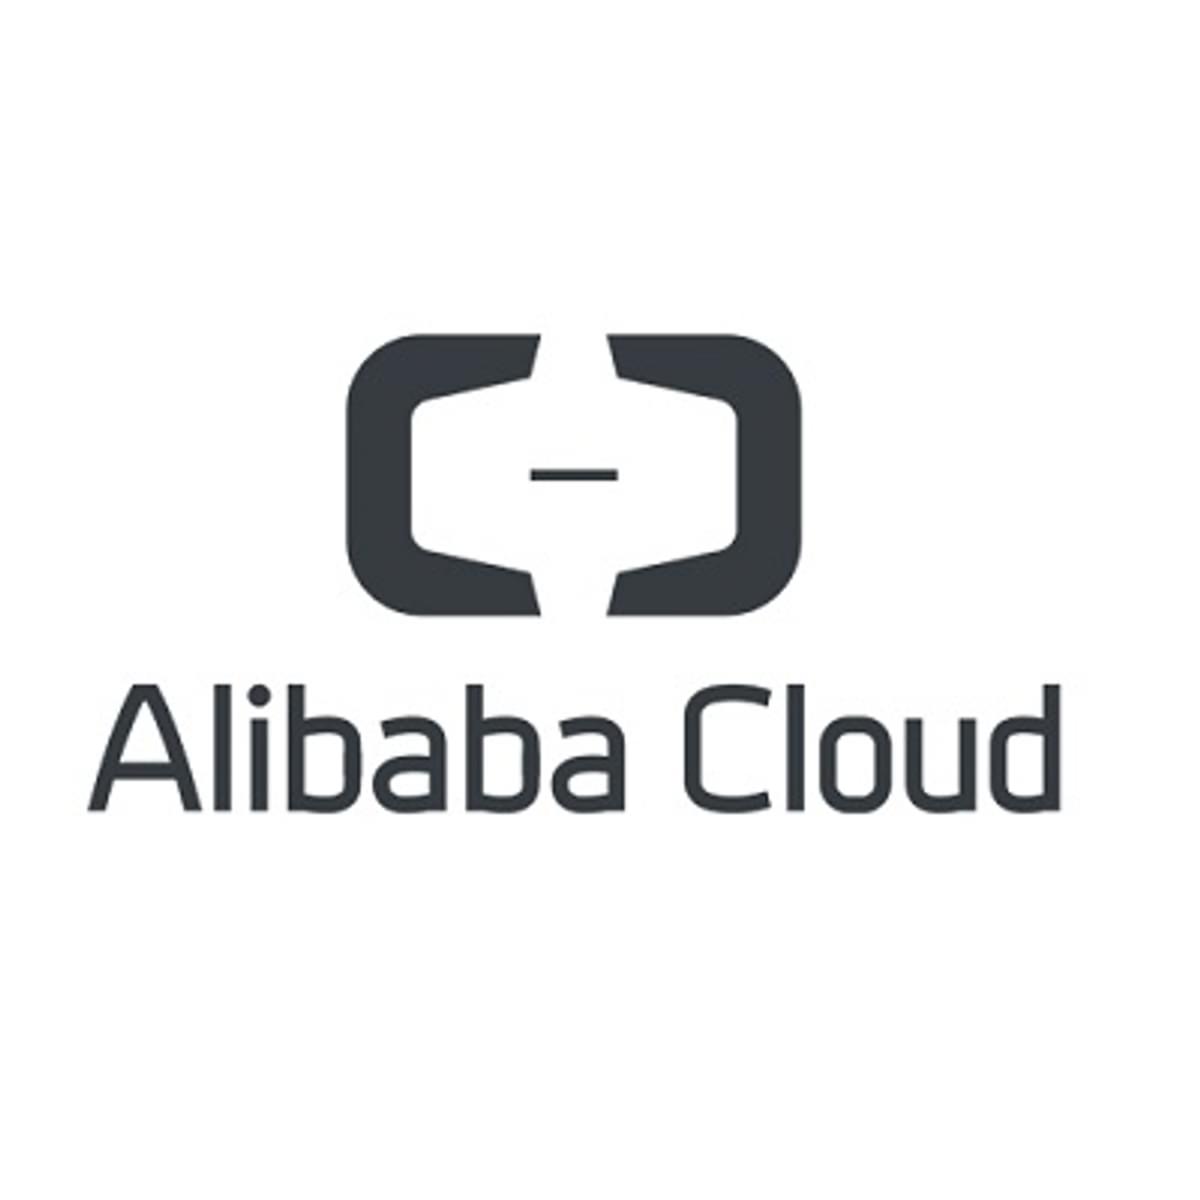 Alibaba omzet groeit dankzij online retail en cloud business image